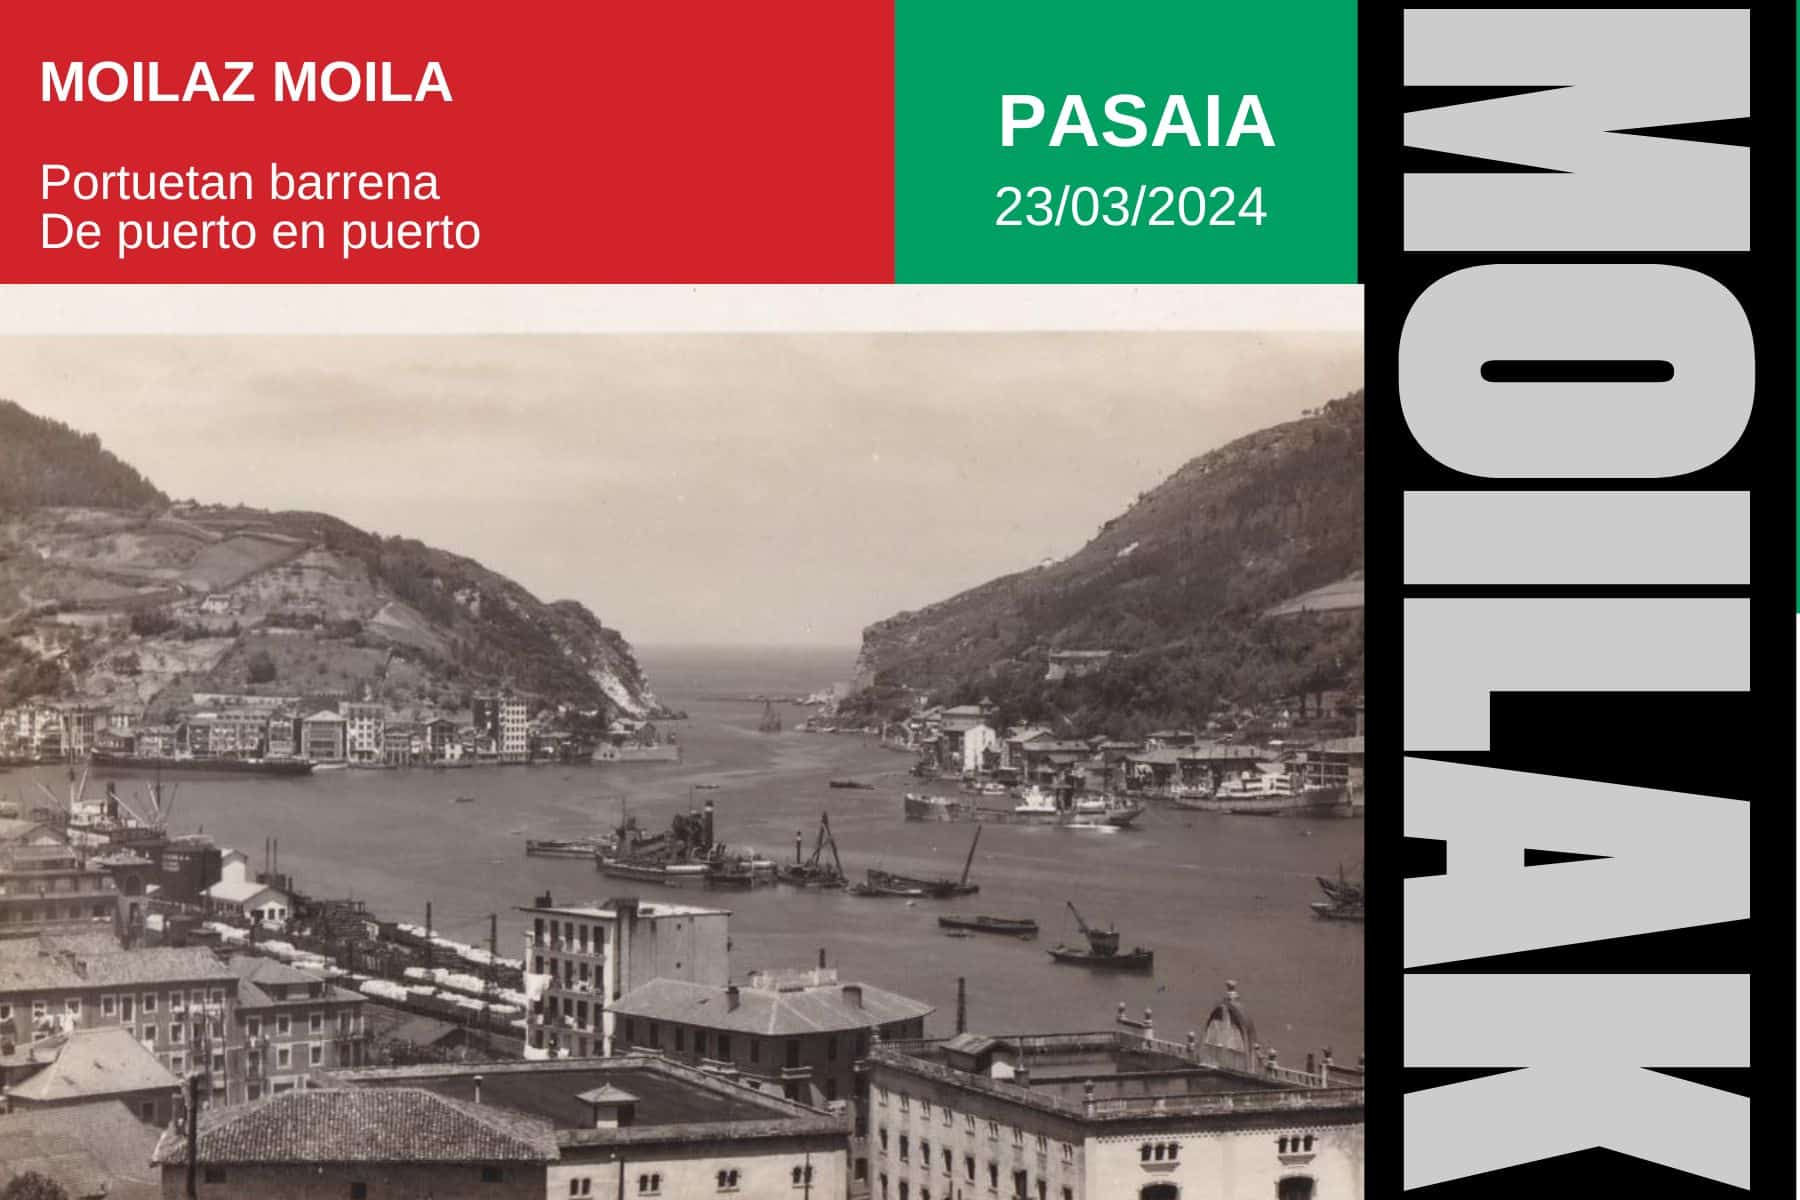 MoilazMoila Pasaia - Euskal Itsas Museoa invita a conocer los puertos de Pasaia y Donostia